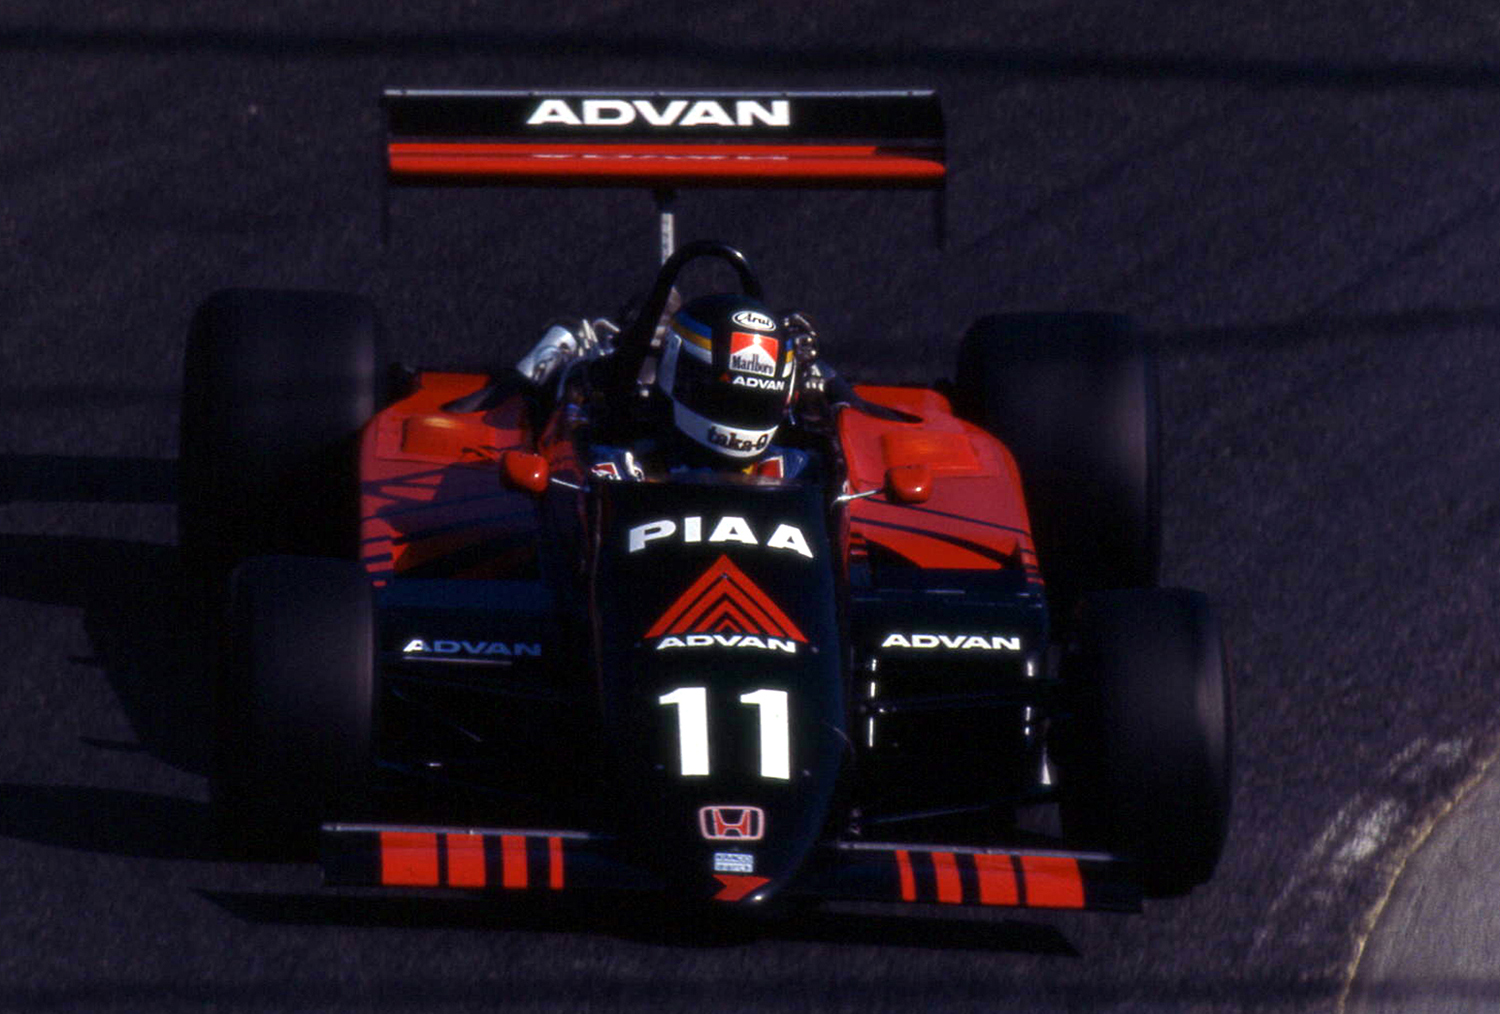 その速さとカラーリングに憧れた印象深い「ADVAN」カラーのレースマシン 〜 画像12